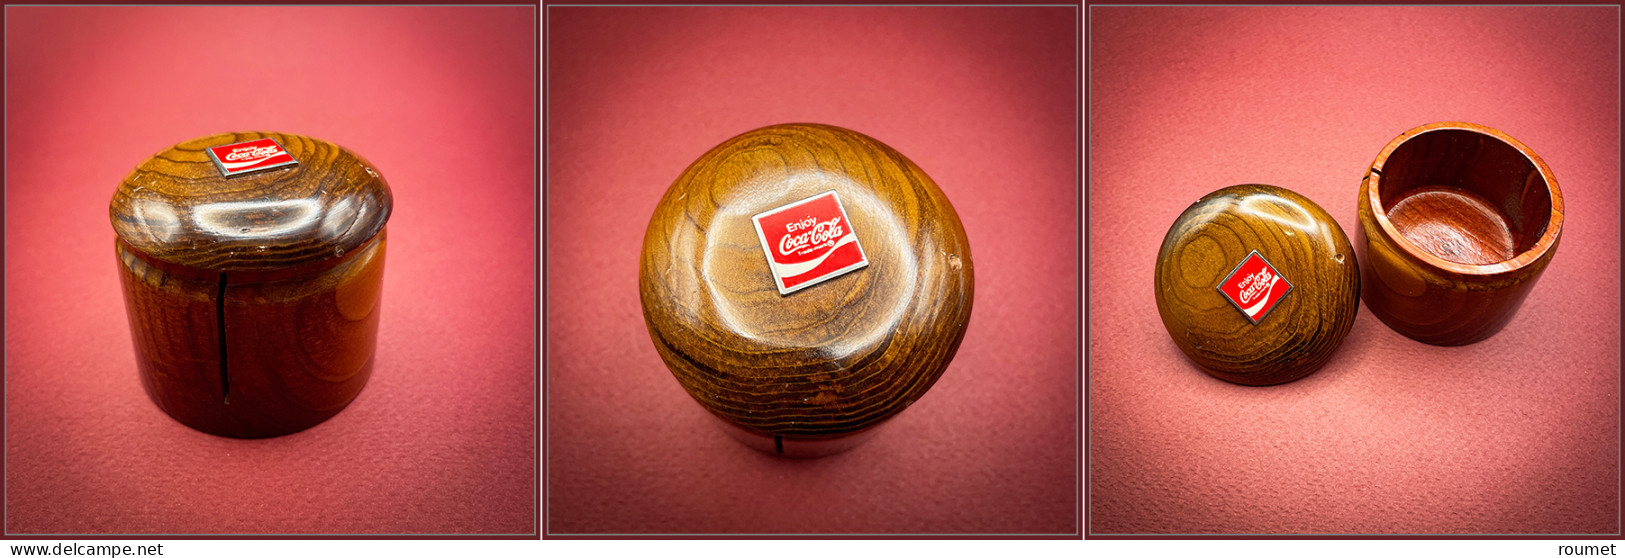 Distributeur De Roulettes. Modèle Publicitaire En Bois Verni, Sigle "Coca-Cola" Sur Couvercle, étiquette "California Red - Stamp Boxes